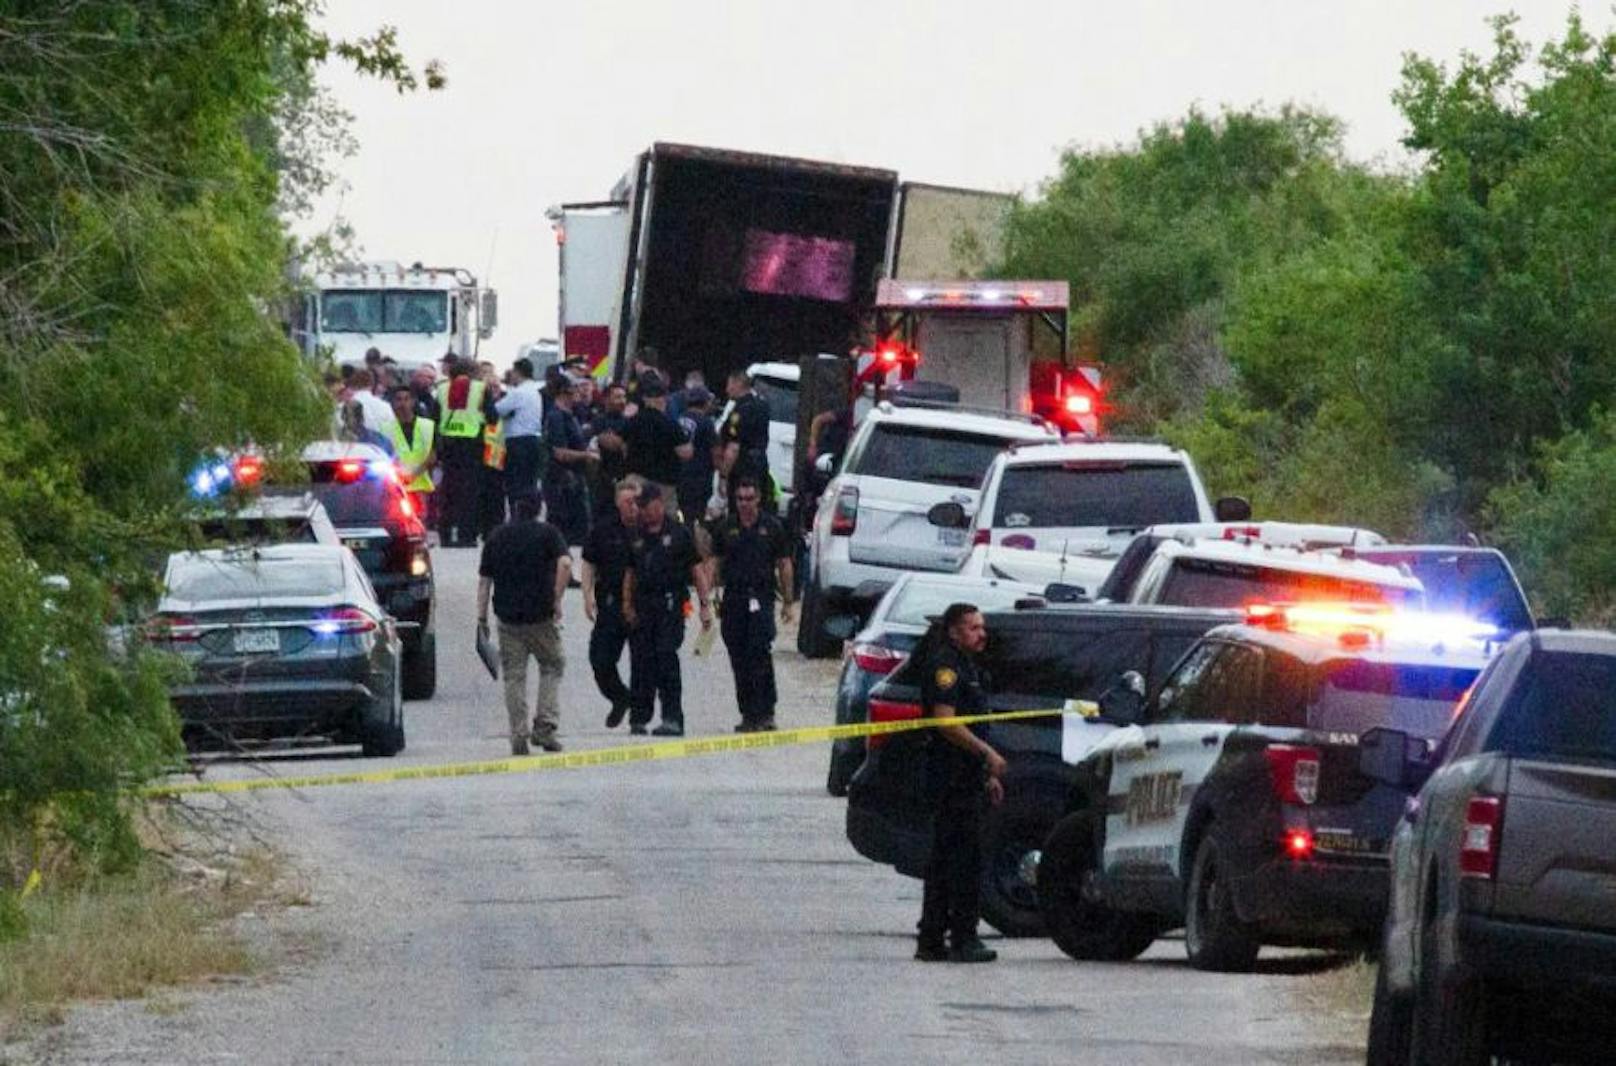 Leichen von 46 Migranten in Lastwagen in Texas gefunden